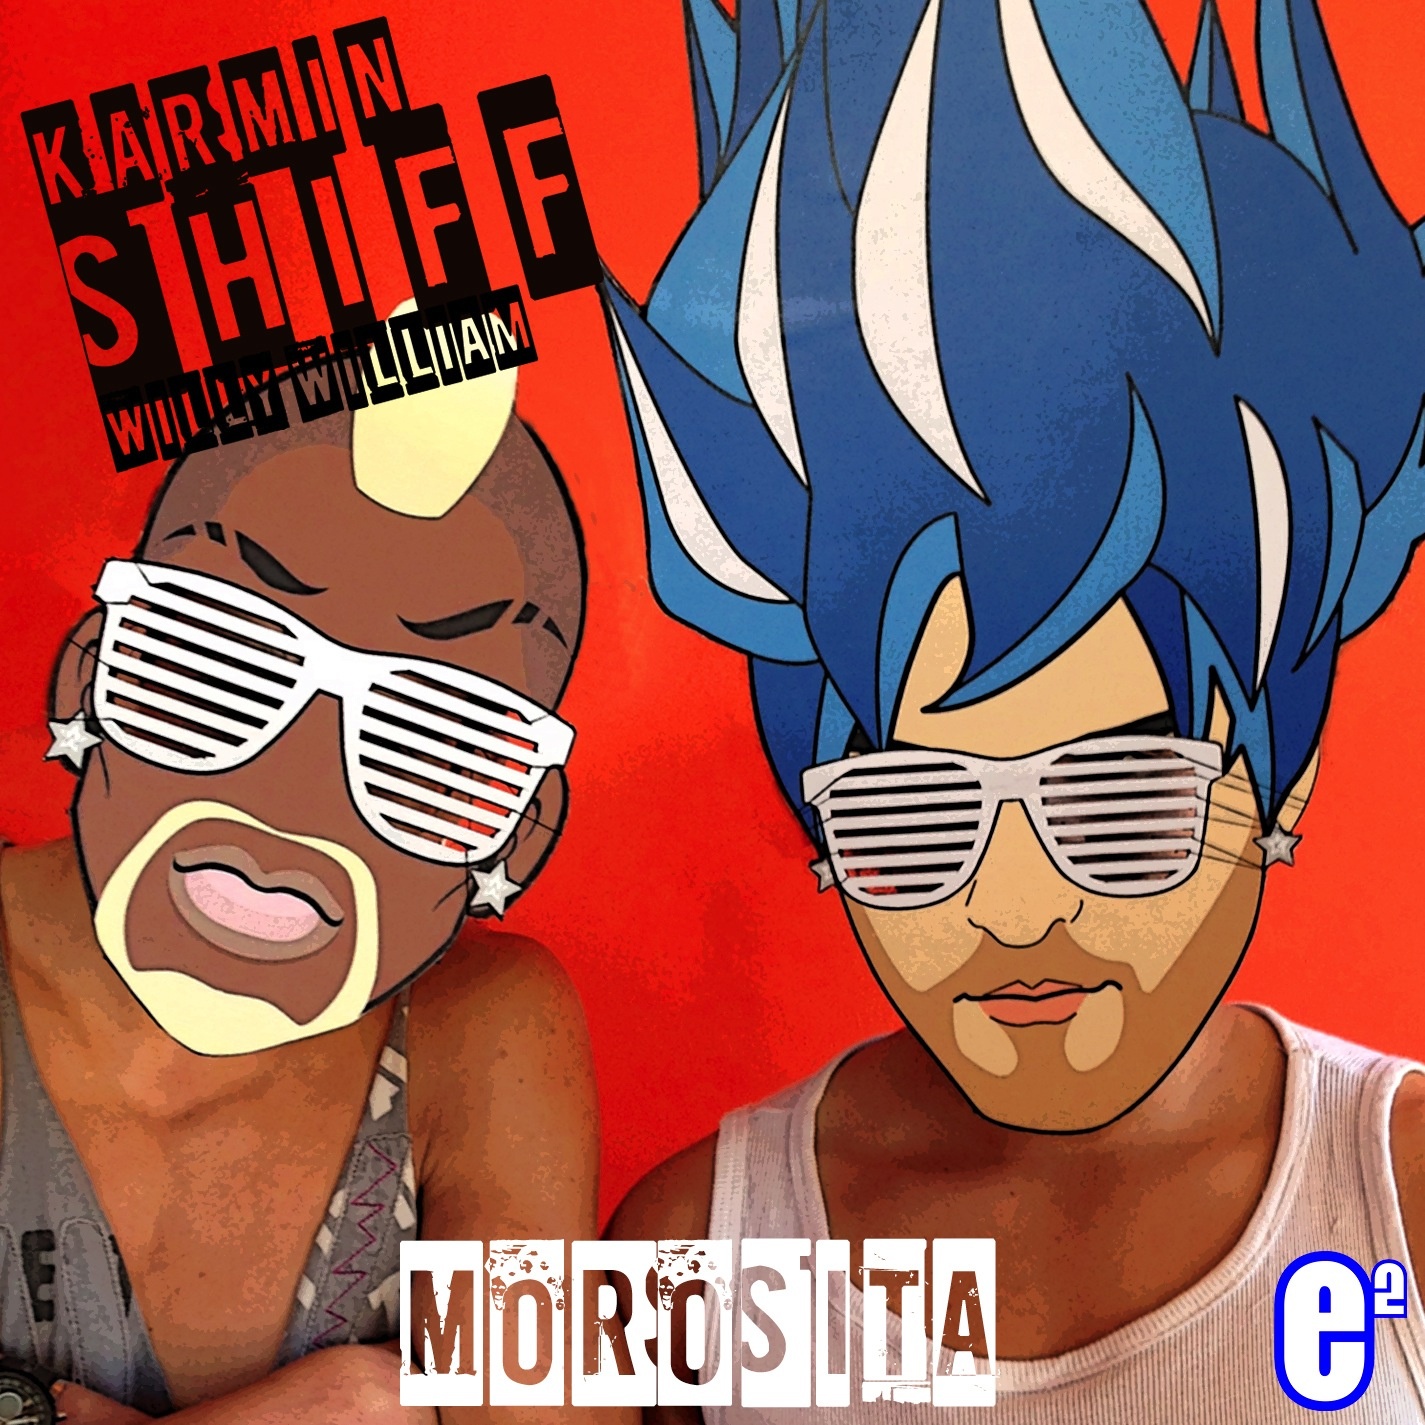 Morosita (Radio Edit)